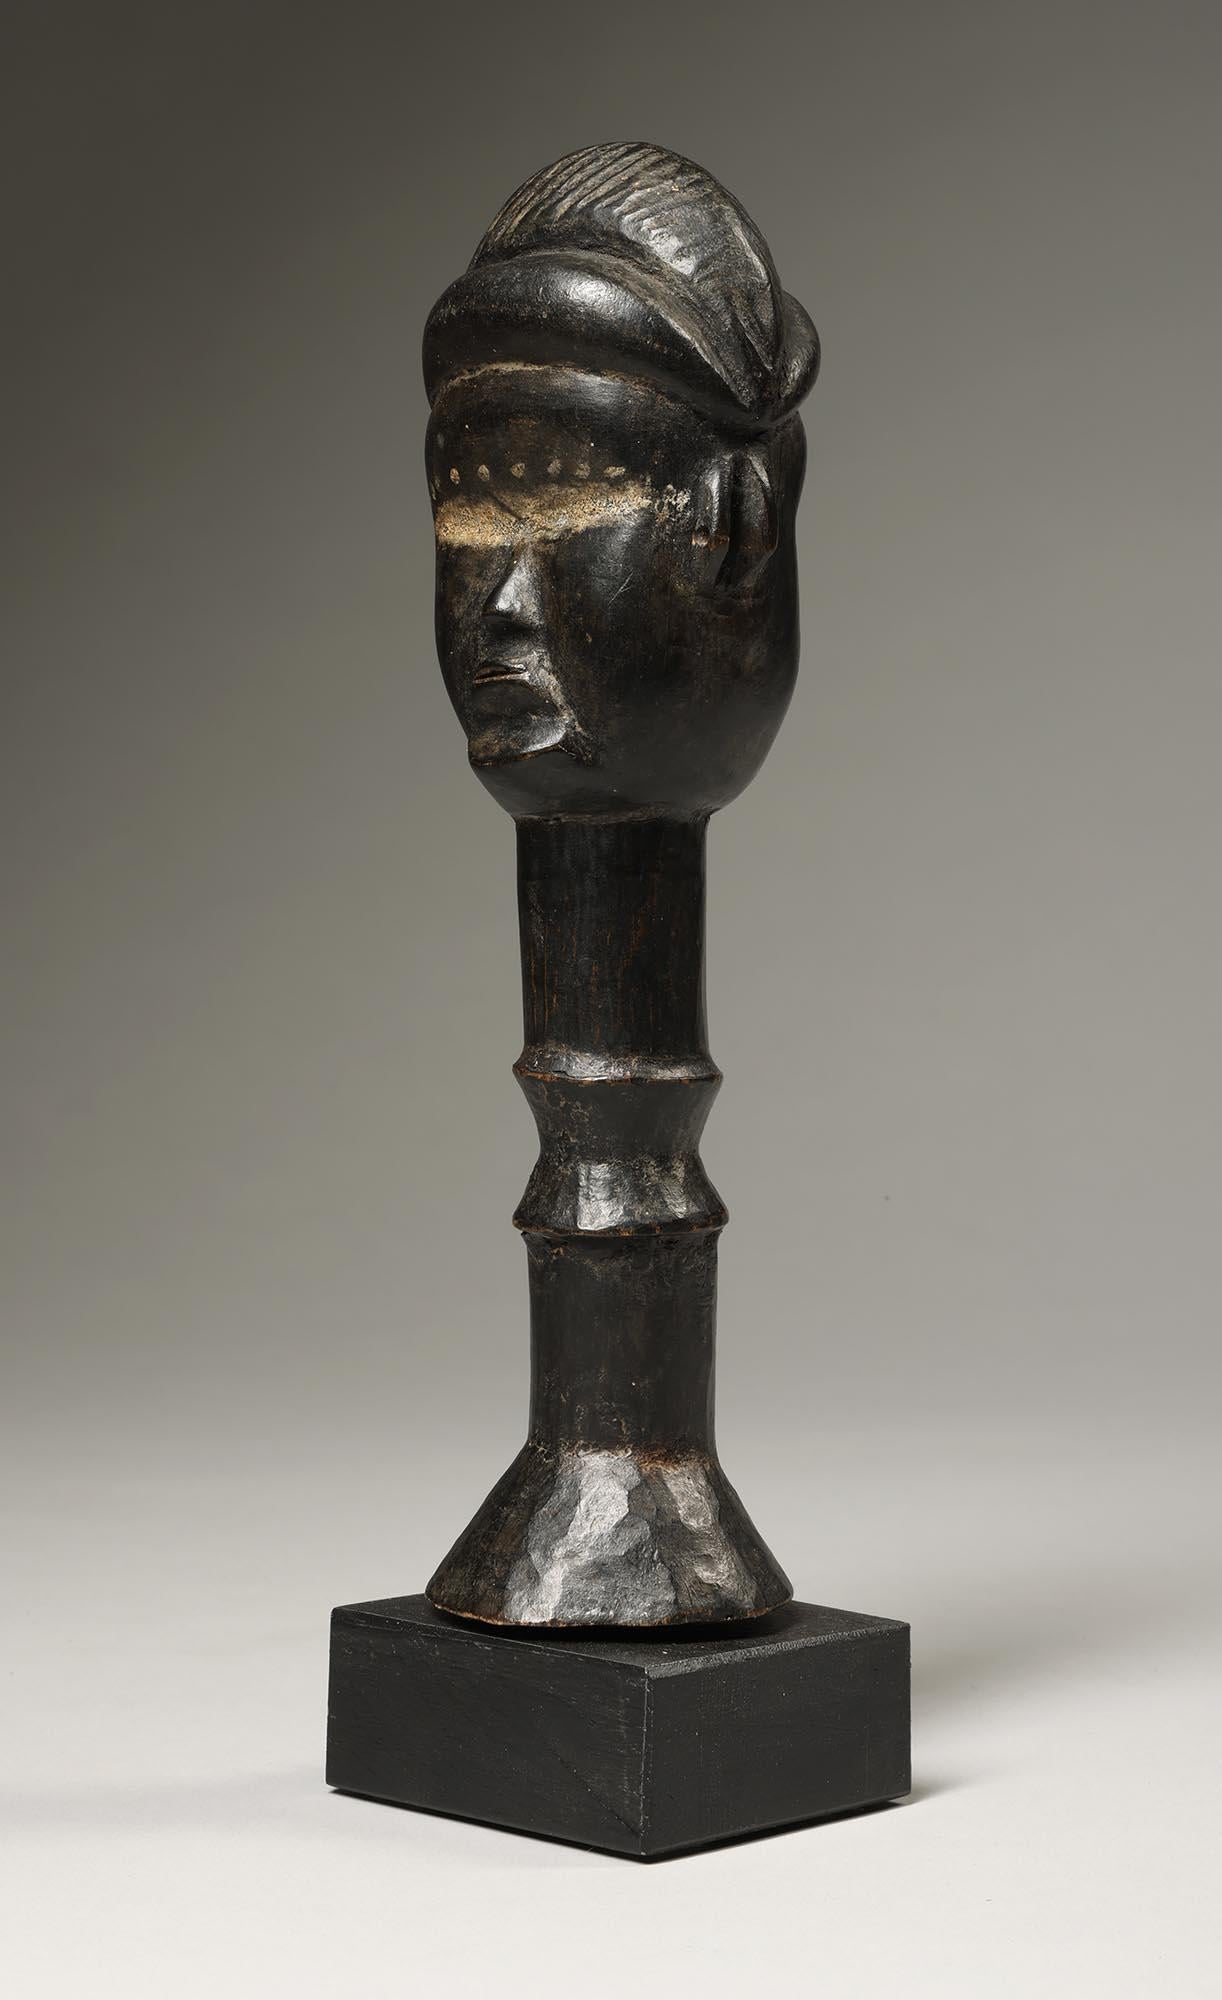 Amuleto protector Kinde Dan Janus de doble cara, del pueblo Dan de Costa de Marfil, África Occidental.  Se utiliza como amuleto de protección, con dos caras diferentes para mostrar la dualidad del mundo, y la ayuda para proporcionar seguridad a los